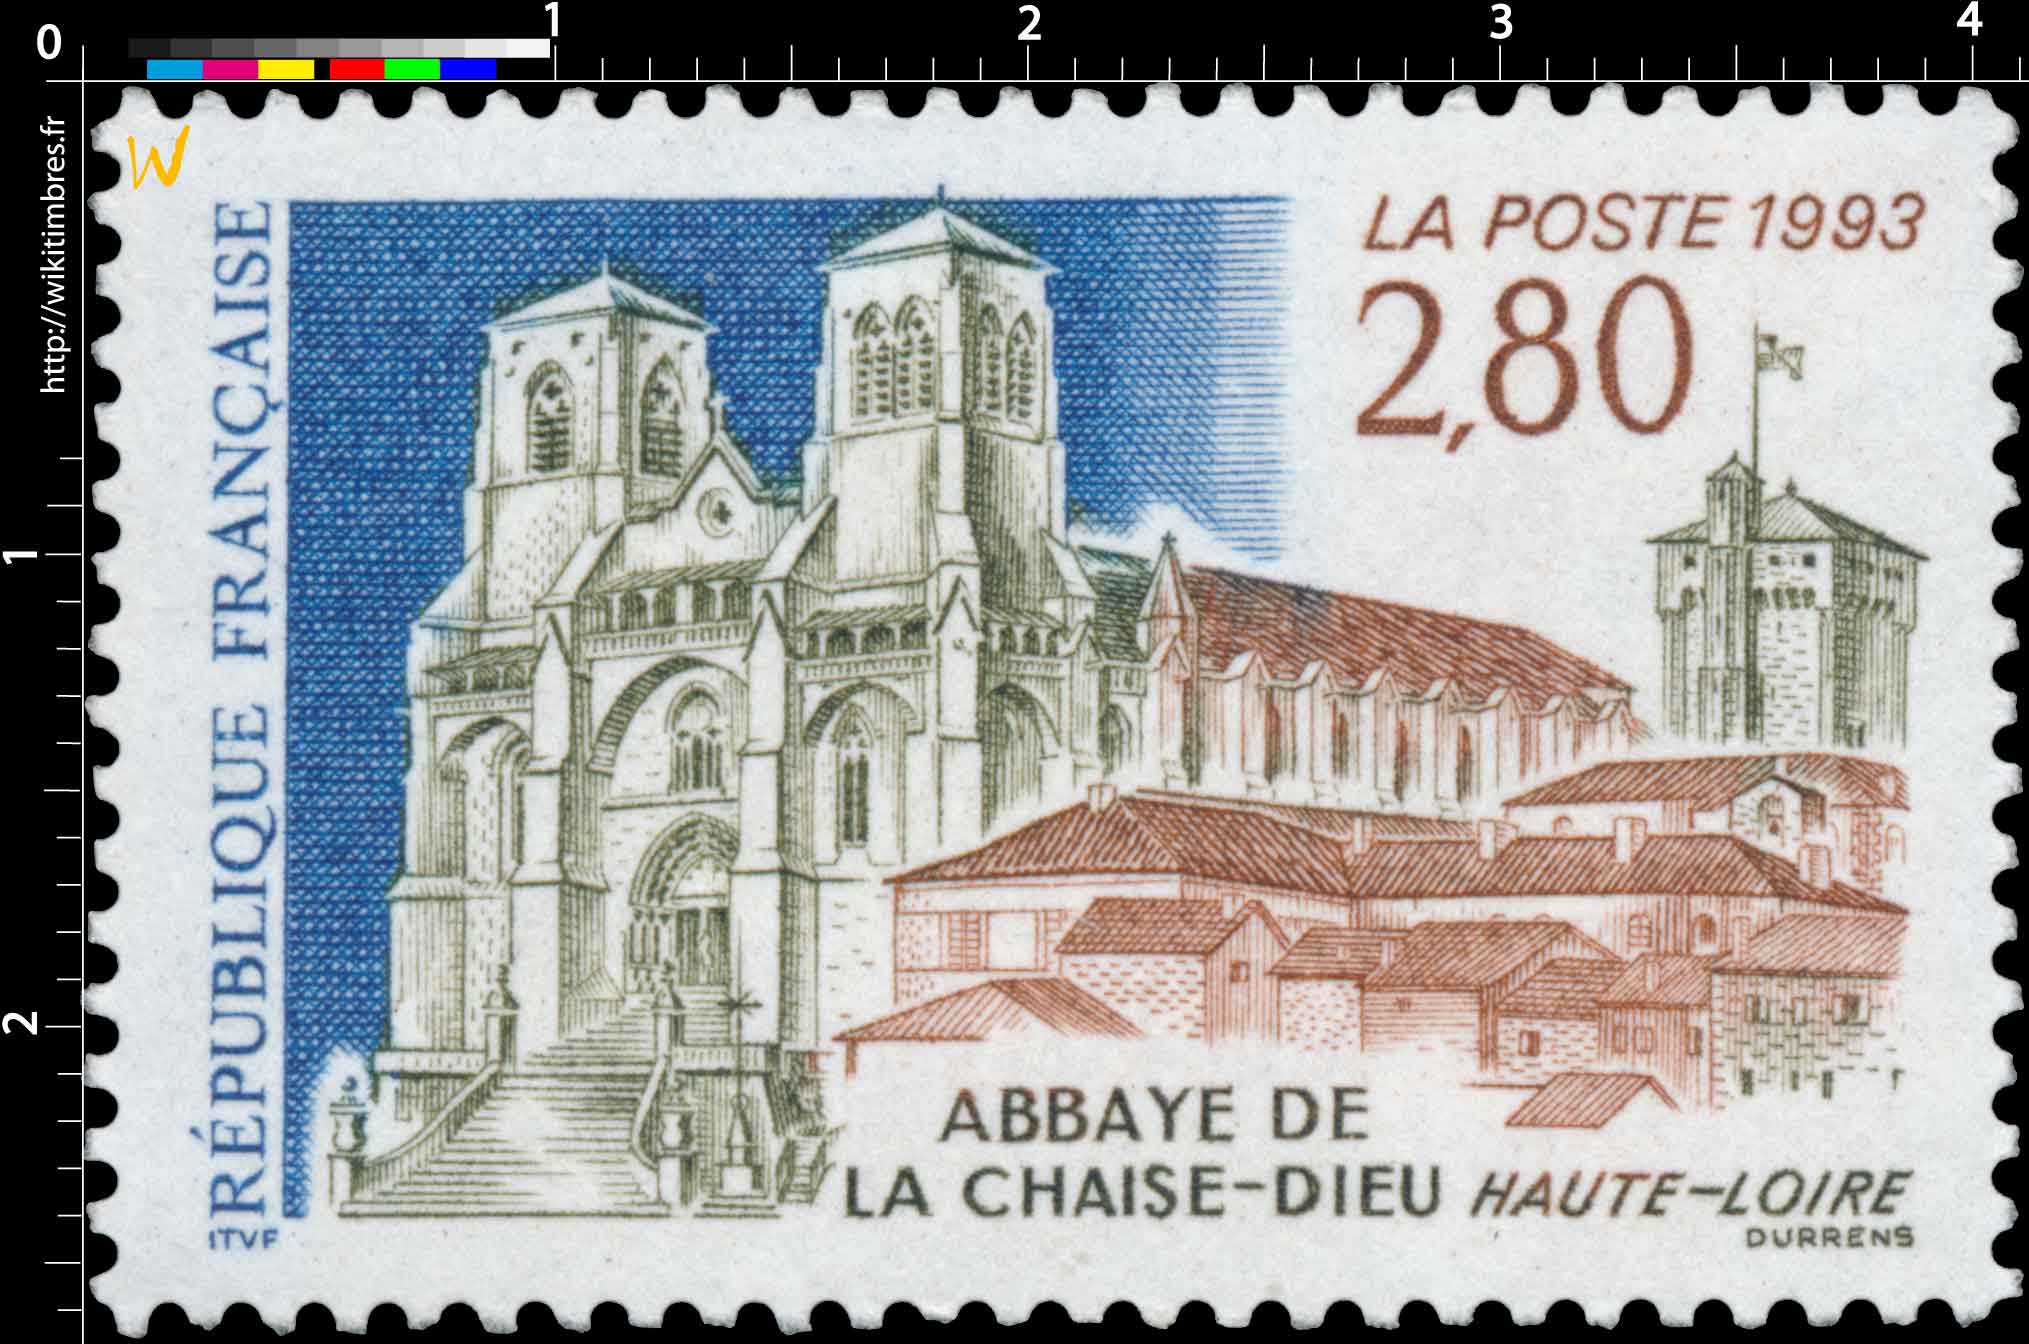 1993 ABBAYE DE LA CHAISE-DIEU HAUTE-LOIRE